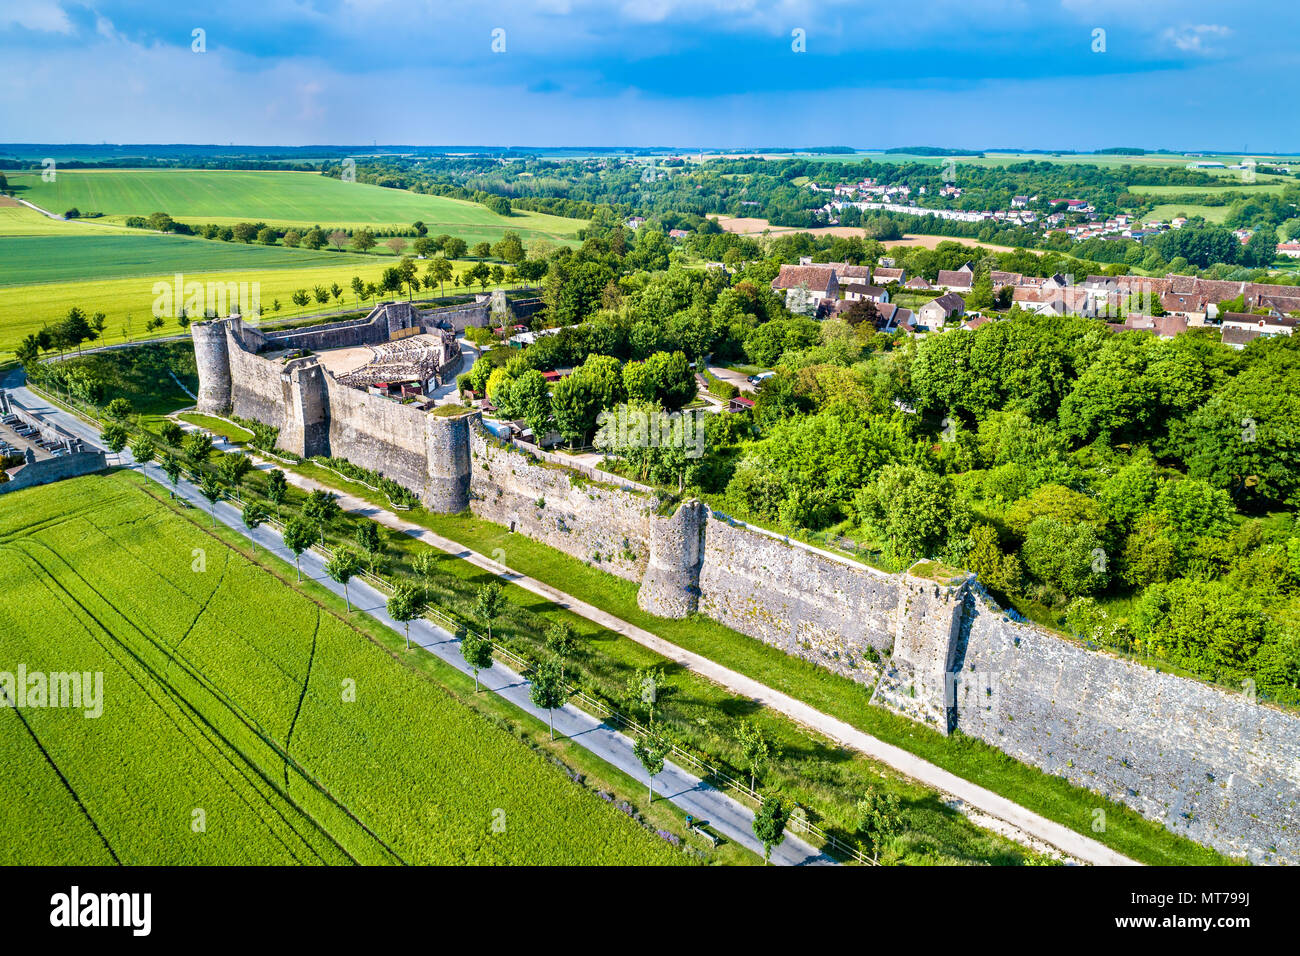 Vue aérienne de la ville de Provins, ville de foire médiévale et site du patrimoine mondial de l'UNESCO en France Banque D'Images